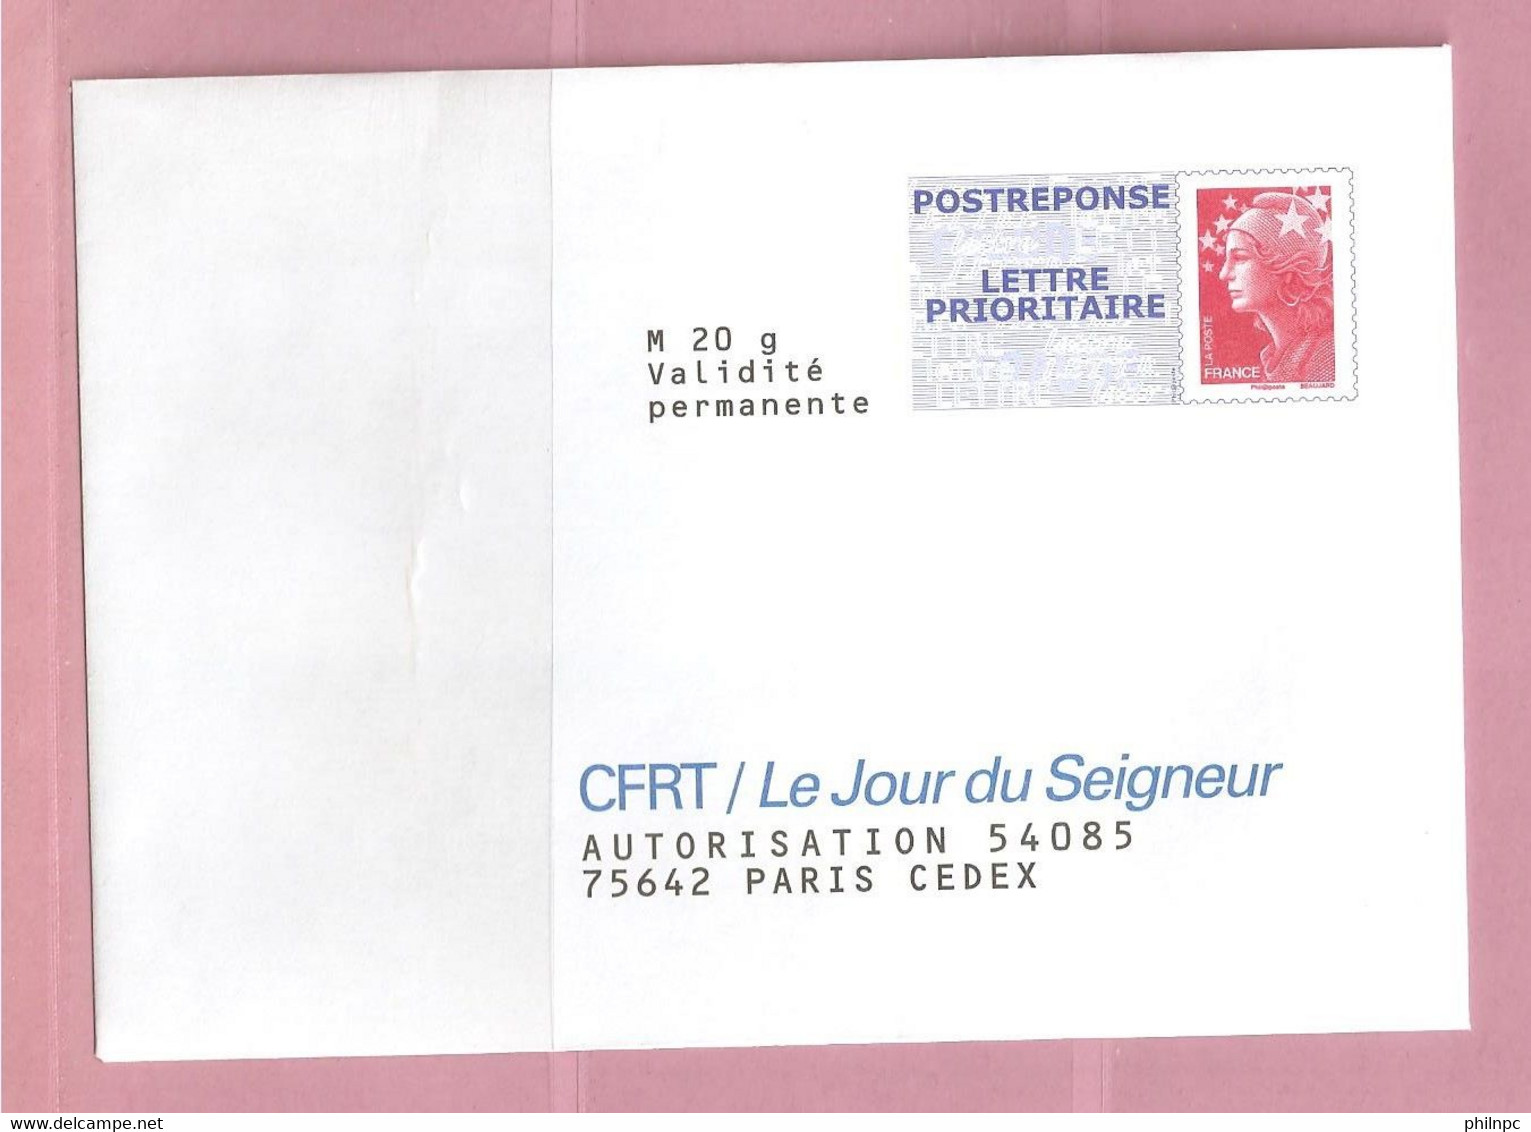 France, Prêt à Poster Réponse, 4230, Postréponse, CFRT Le Jour Du Seigneur, Marianne De Beaujard - Prêts-à-poster:Answer/Beaujard